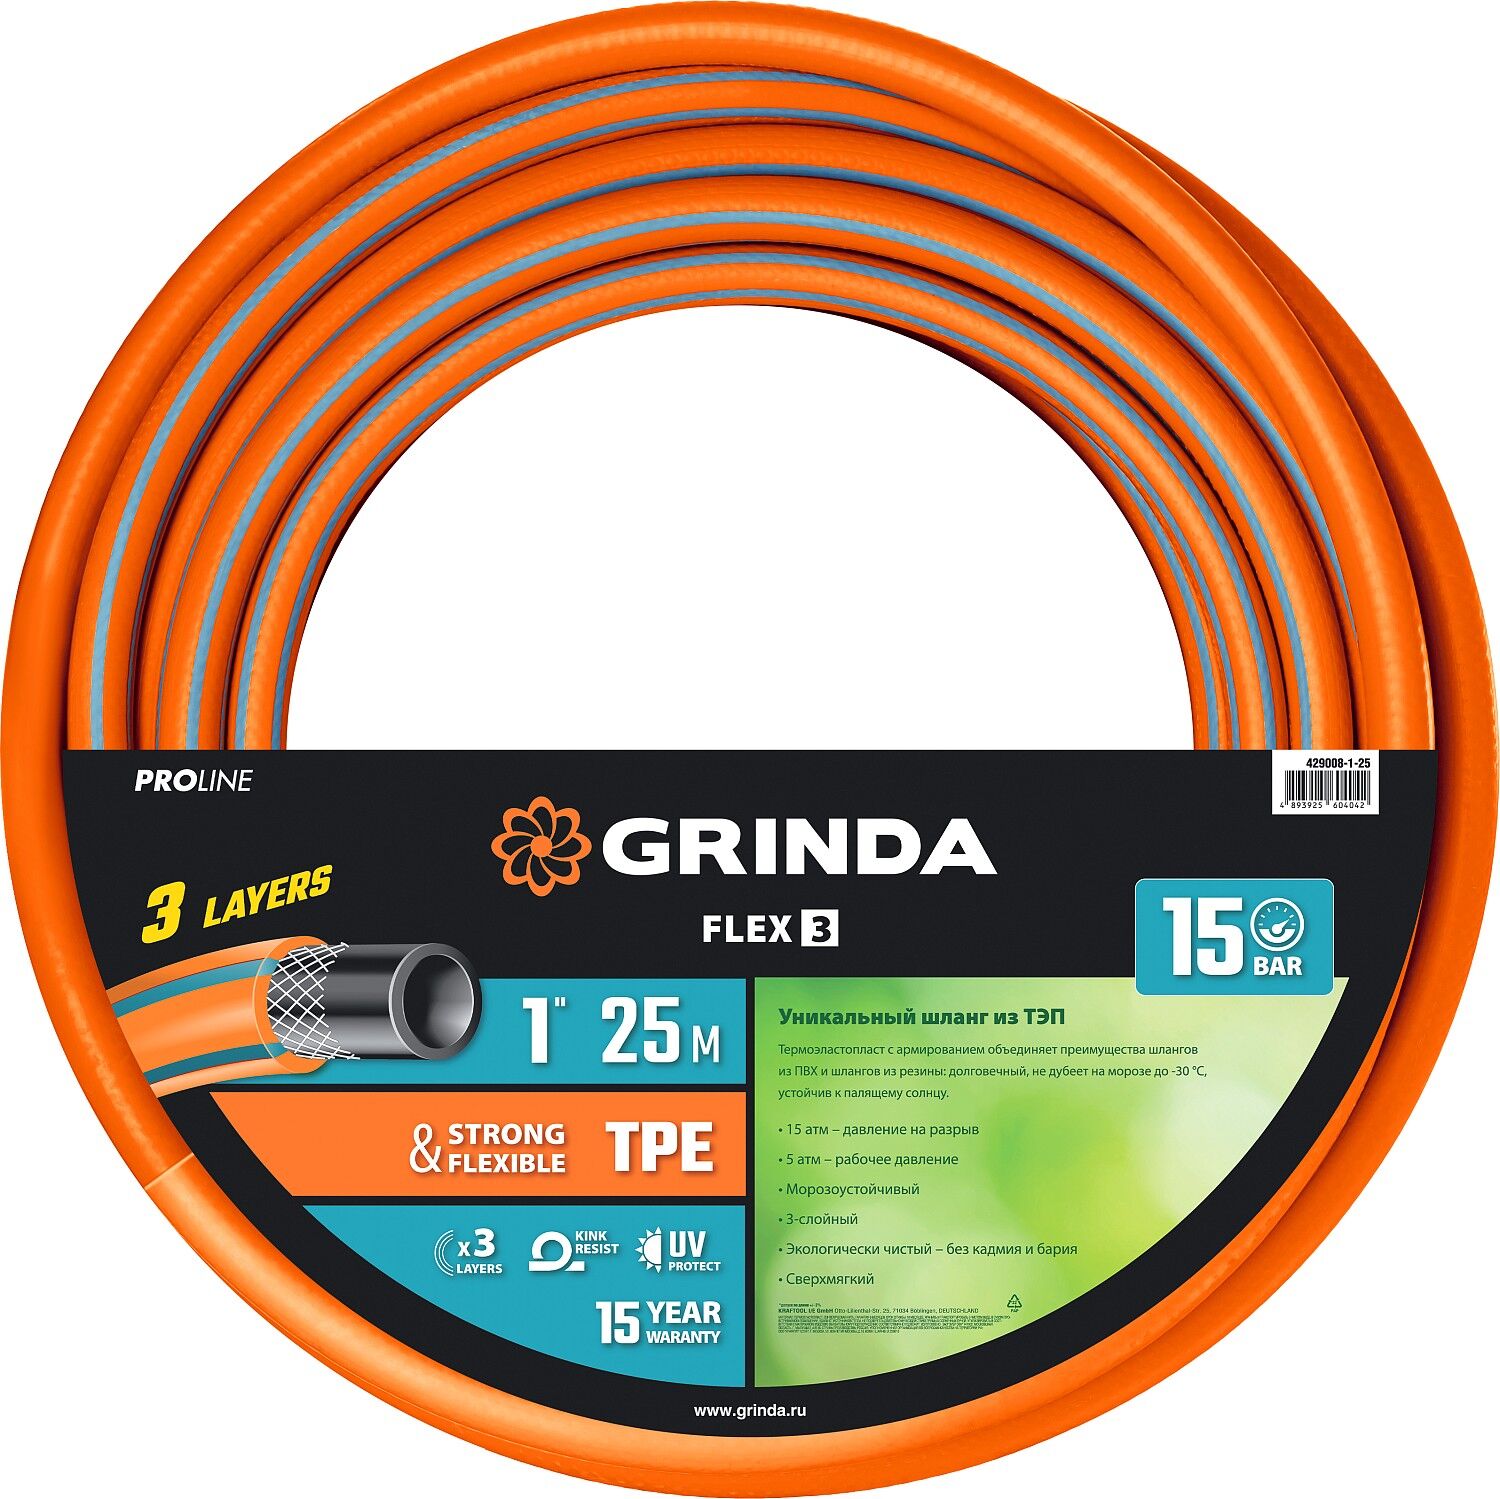 GRINDA FLEX 3, 1″, 25 м, 15 атм, из термоэластопласта, трёхслойный, армированный, гибкий, поливочный шланг, PROLine (429